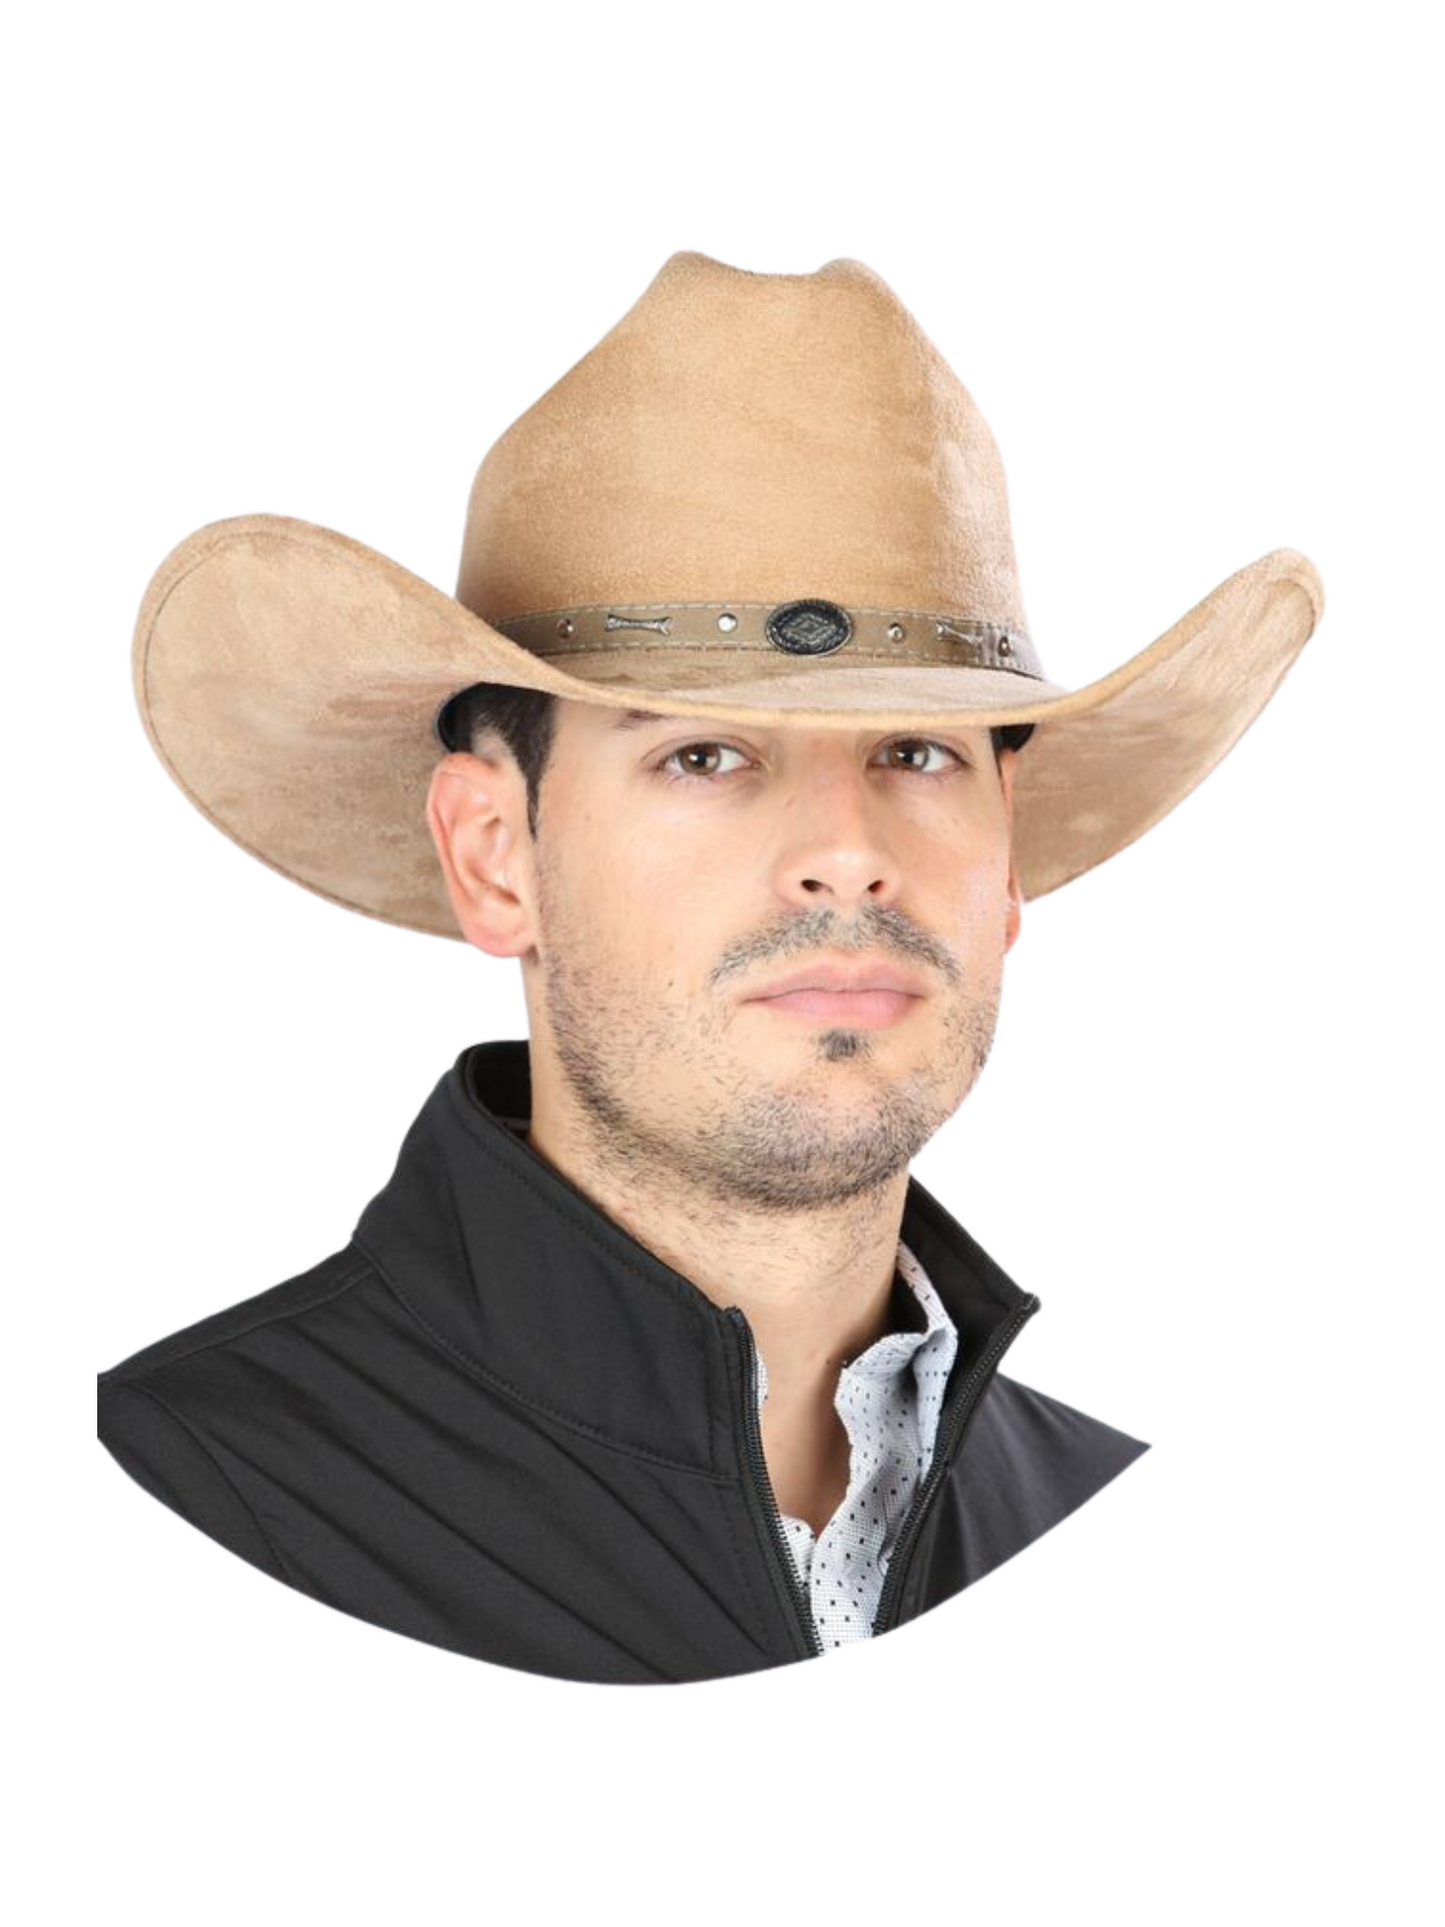 Suede Indiana Last Cowboy Hat for Men / Unisex 'El General' Cowboy Hat El General